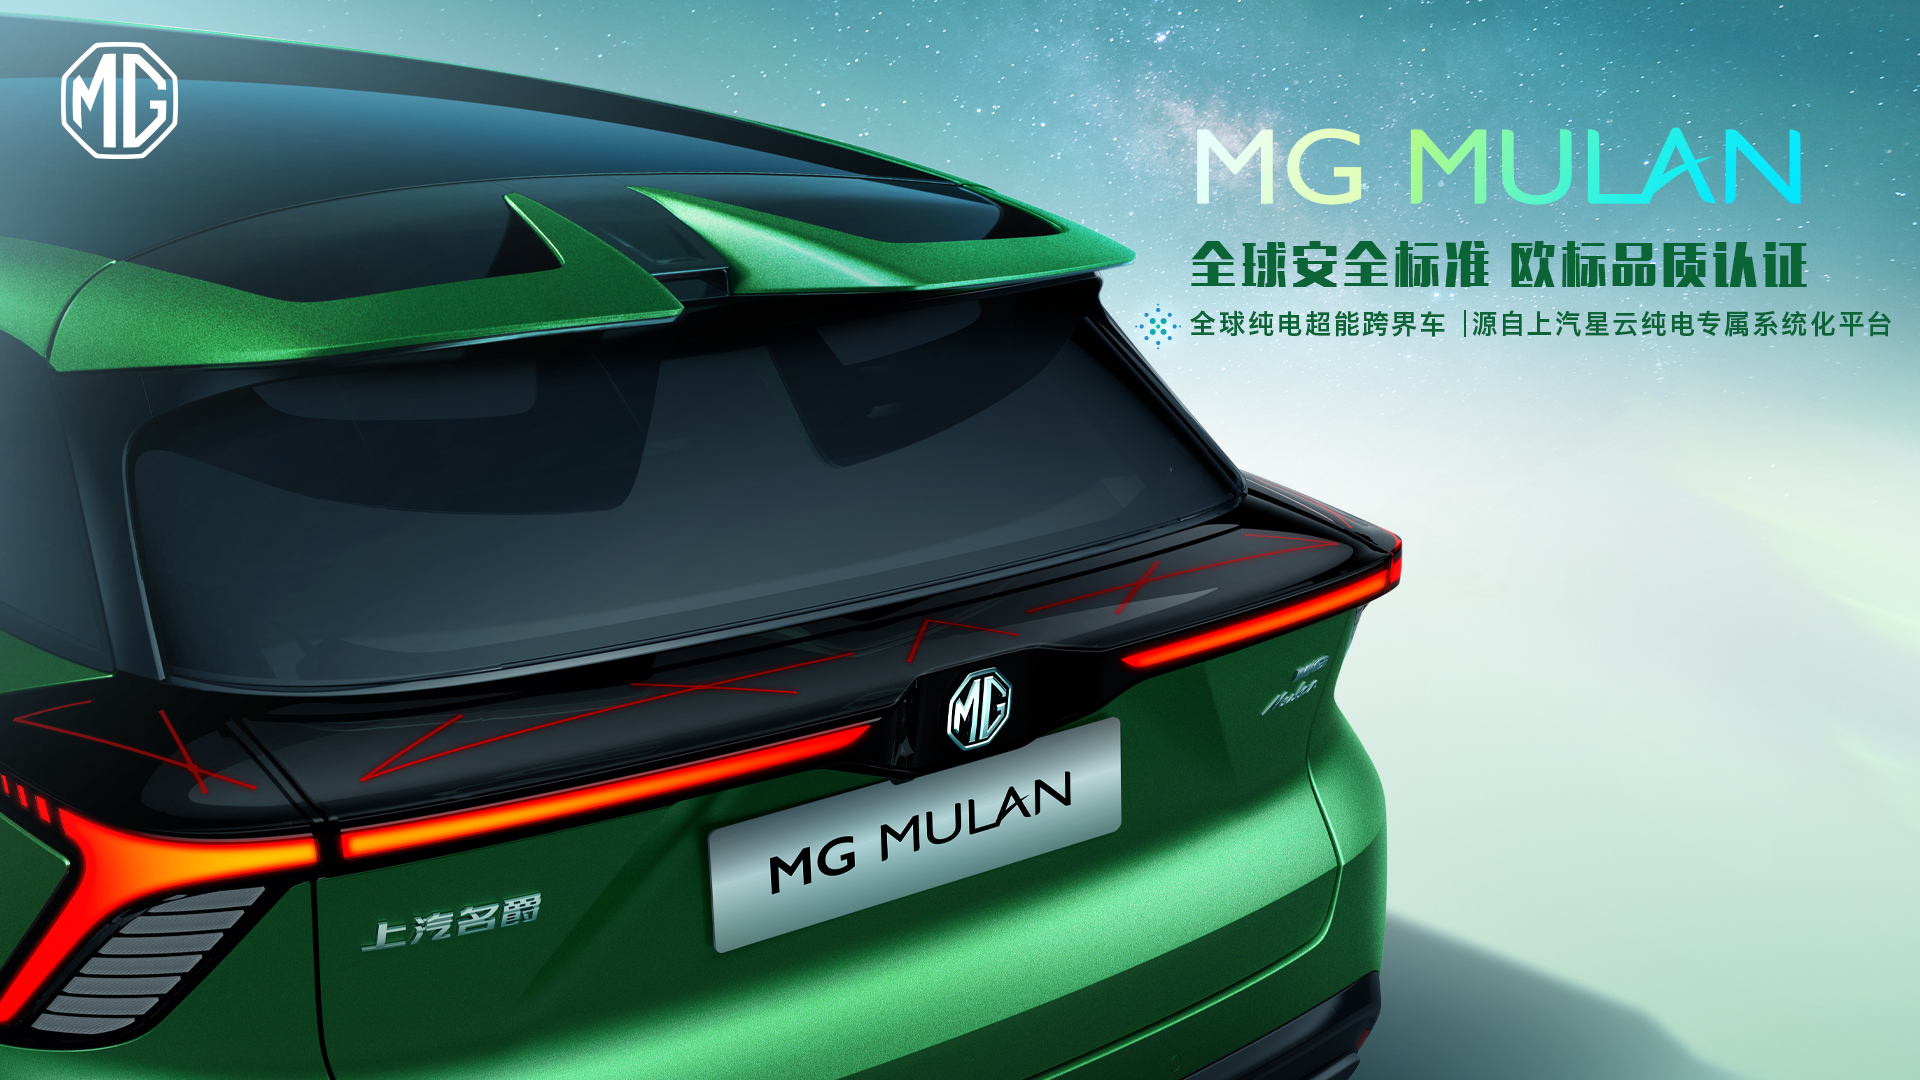 中国汽车工业首款真正意义的全球车 MG MULAN用前瞻技术征战全球！